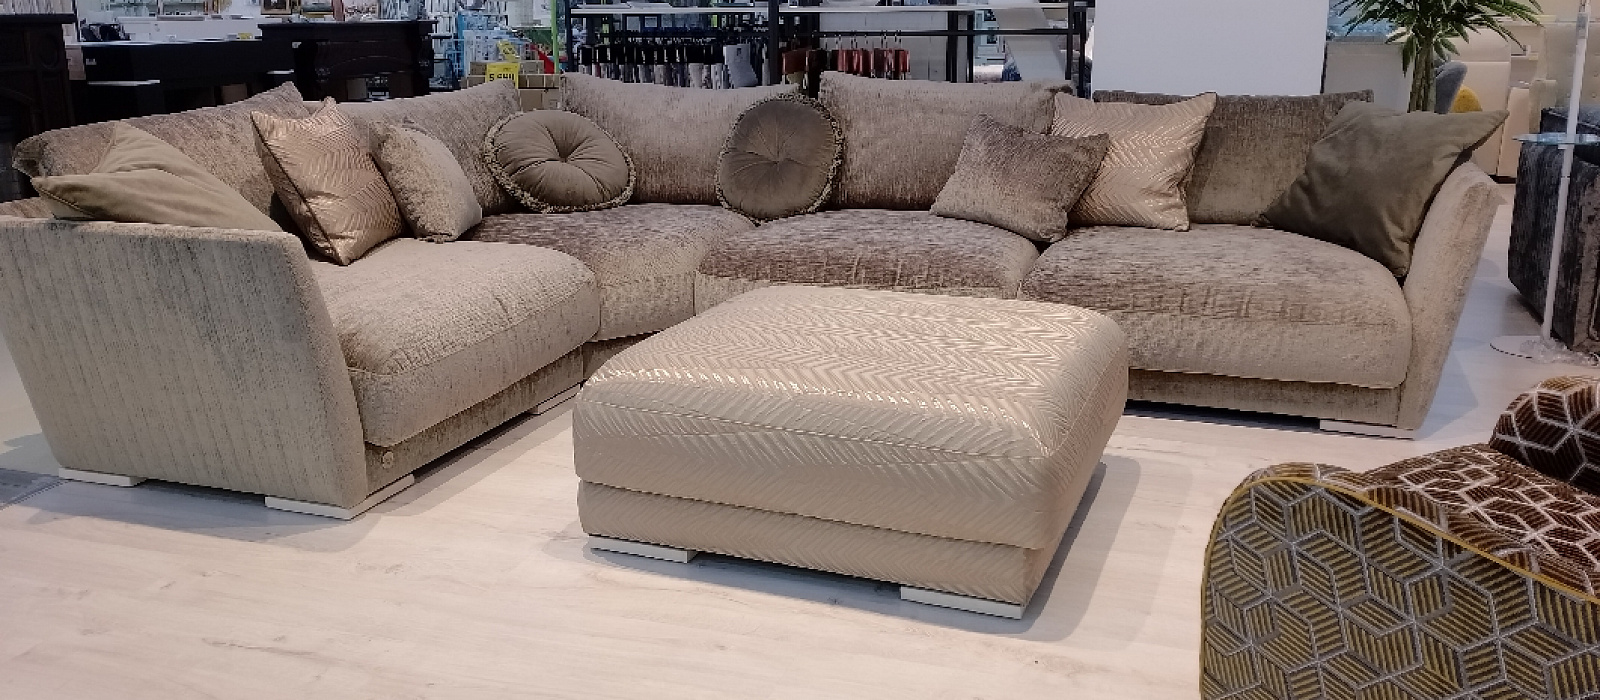 Купить Дижон диван в интернет магазине Anderssen - изображение 1